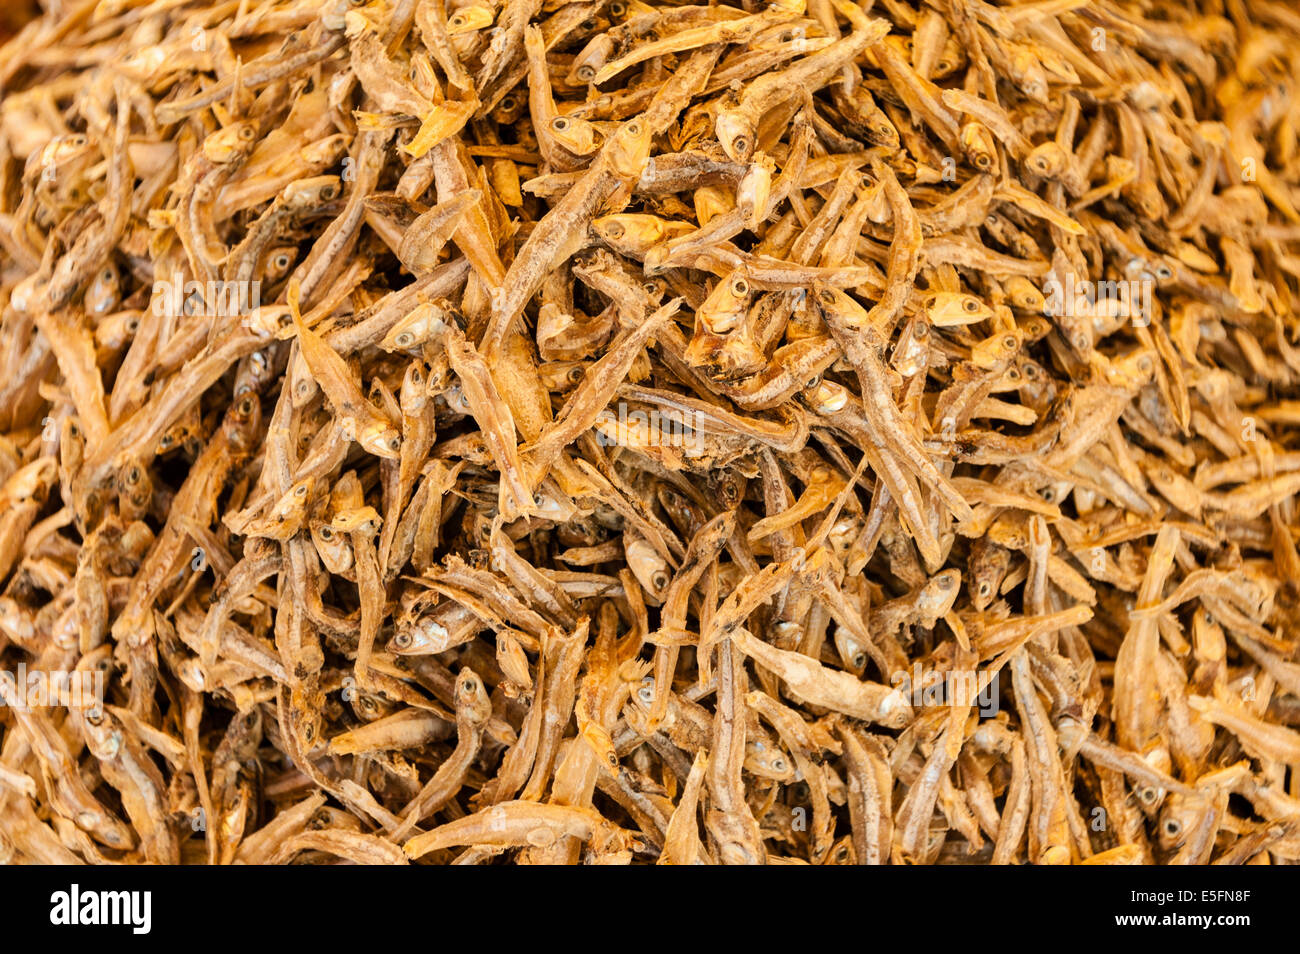 Dried Sardines or Pilchards (Sardina pilchardus) Stock Photo